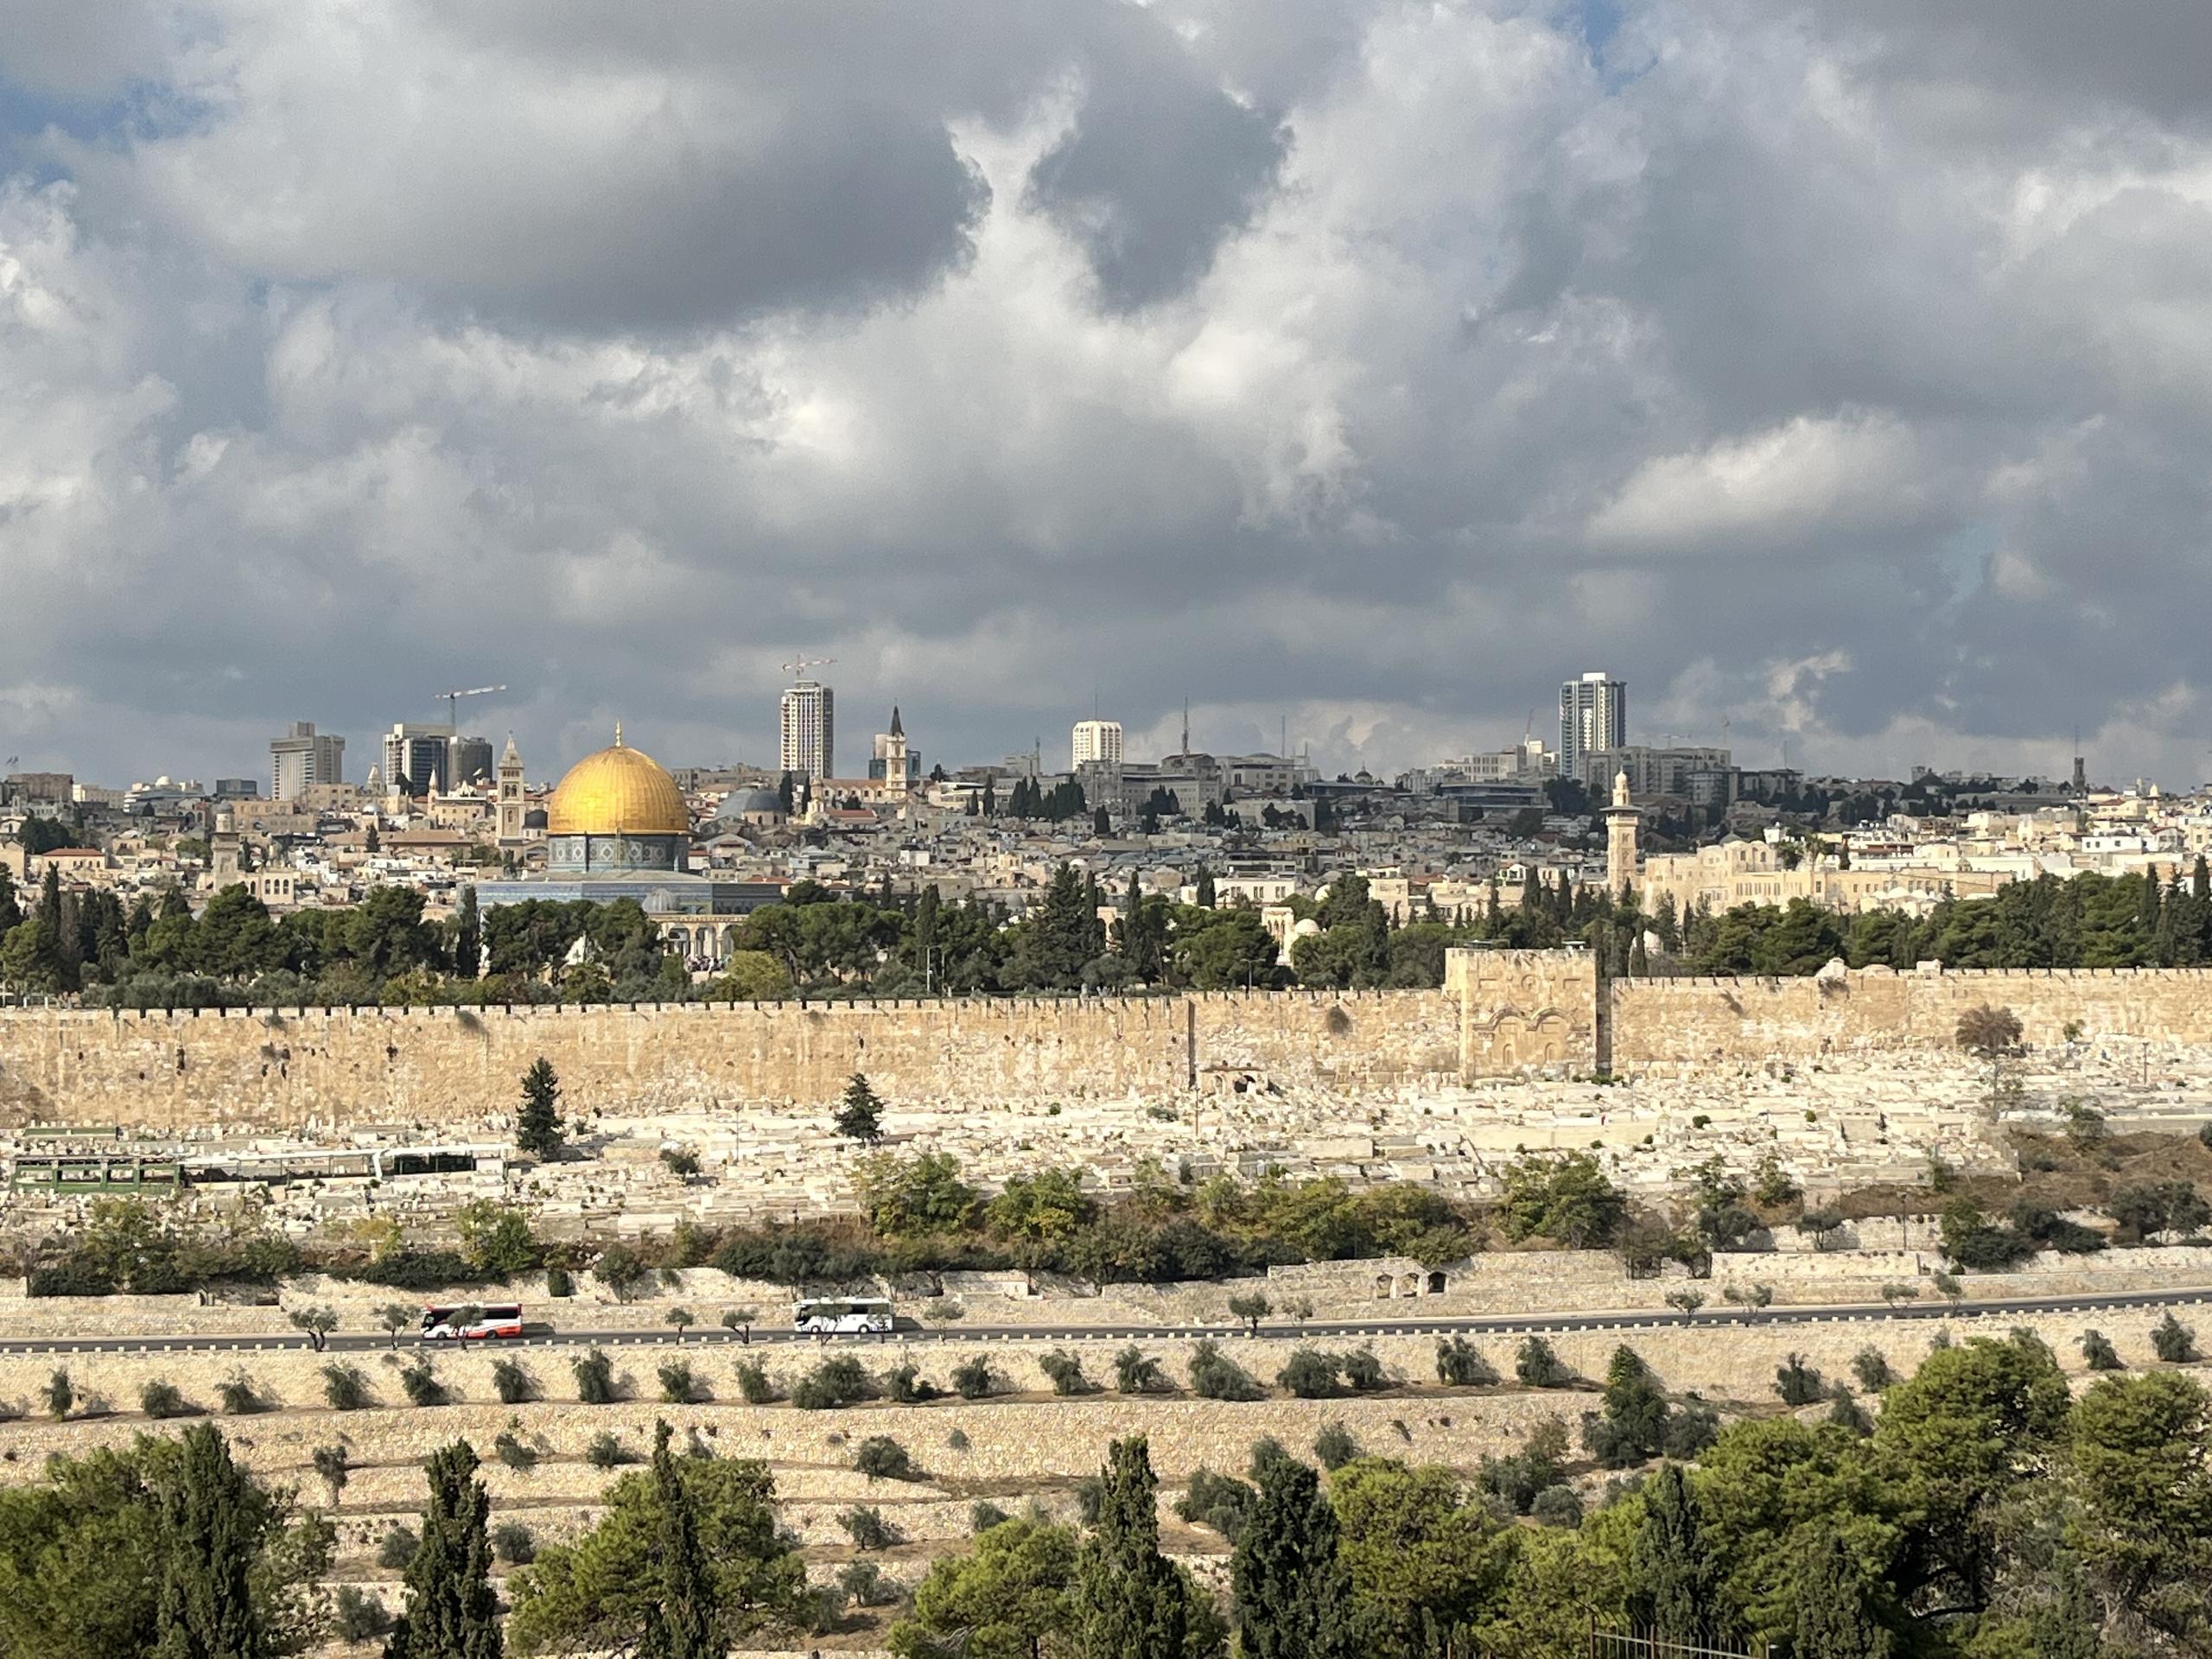 Vista hacia la Ciudad Vieja de Jerusalén desde el Monte de los Olivos. A la derecha se observa la puerta sellada por donde se cree que entró Jesús como el Rey de Israel.